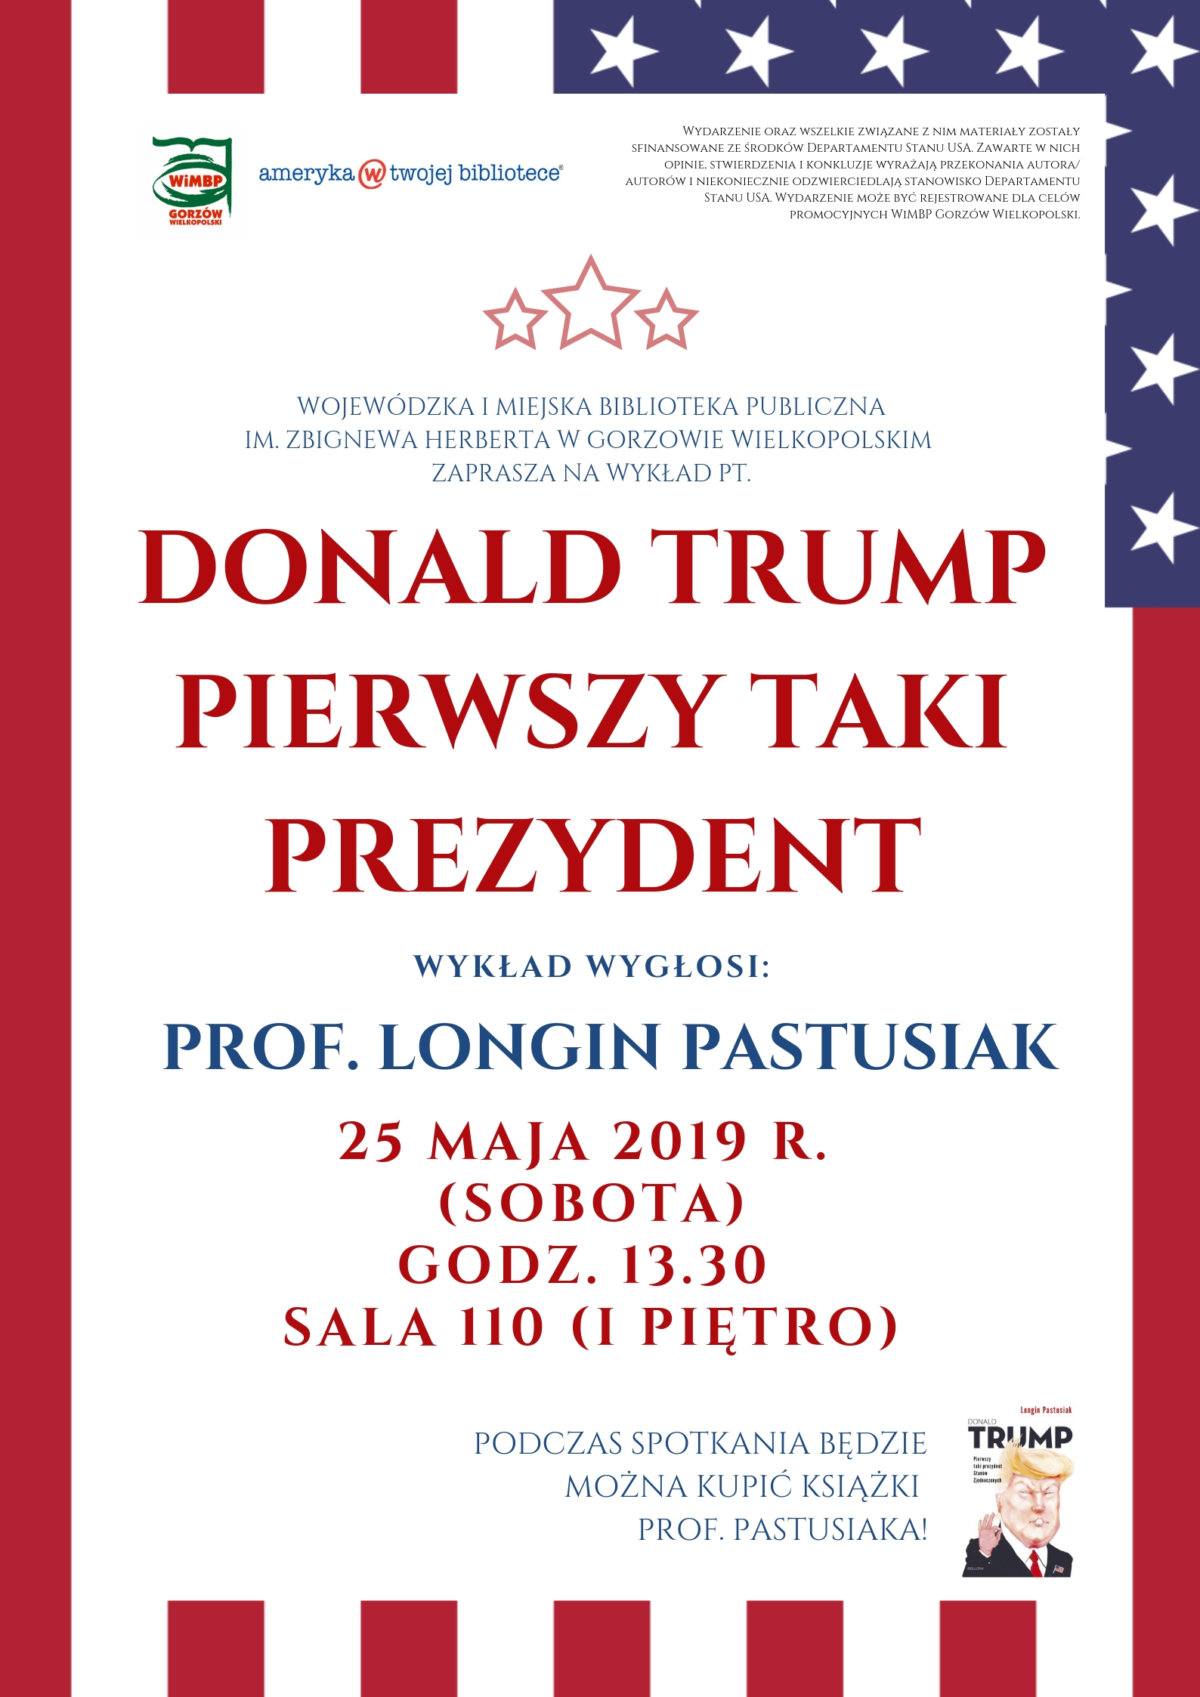 25 maja 2019 r. (sobota) o godz. 13.30 w sali 110 (I piętro) wykład pt. "Donald Trump - pierwszy taki prezydent" wygłosi prof. Longin Pastusiak. Podczas wykładu będzie możliwość zakupu książek profesora. Wstęp wolny.